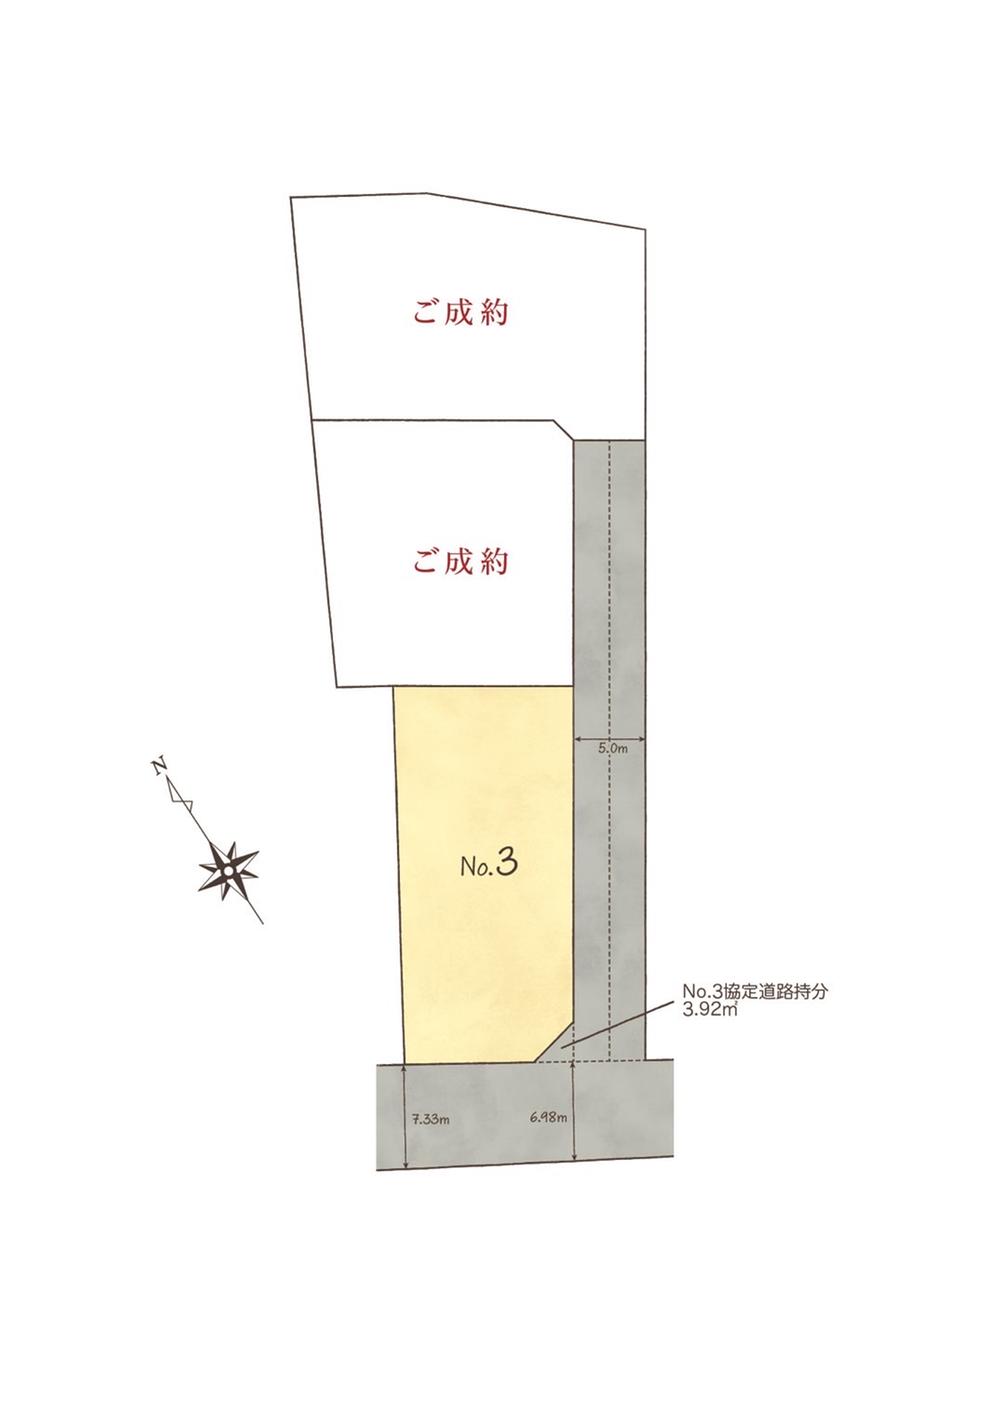 リゾートビレッジ-ヴィラ- 加須市下高柳第2期【Kayu style ハウス】